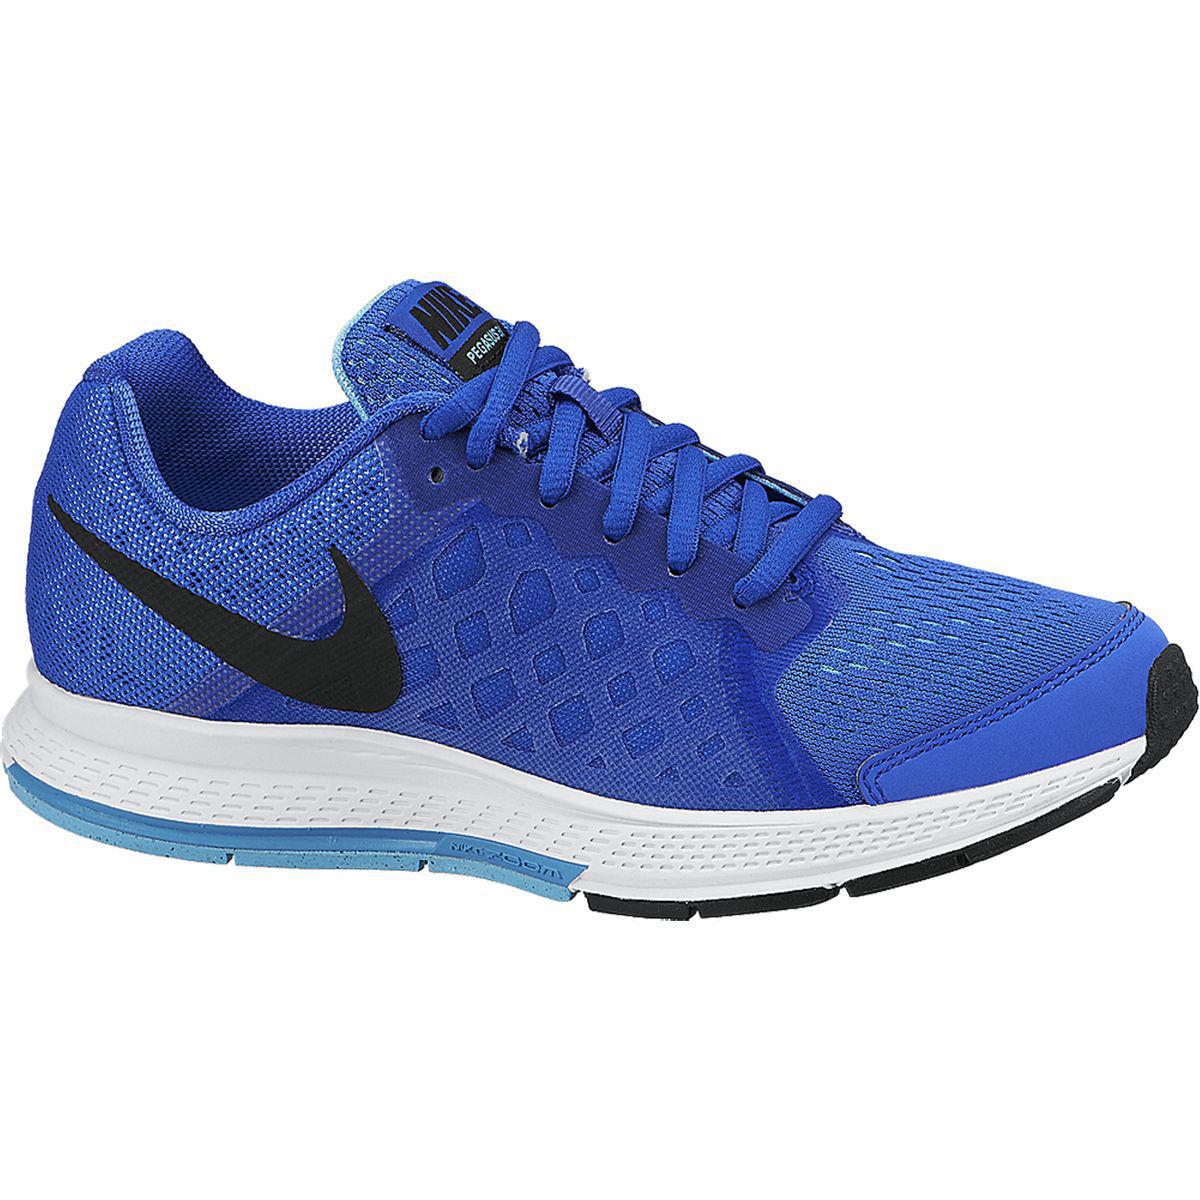 Nike Boys Zoom Pegasus 31 Running Shoes - Blue/Black - Tennisnuts.com